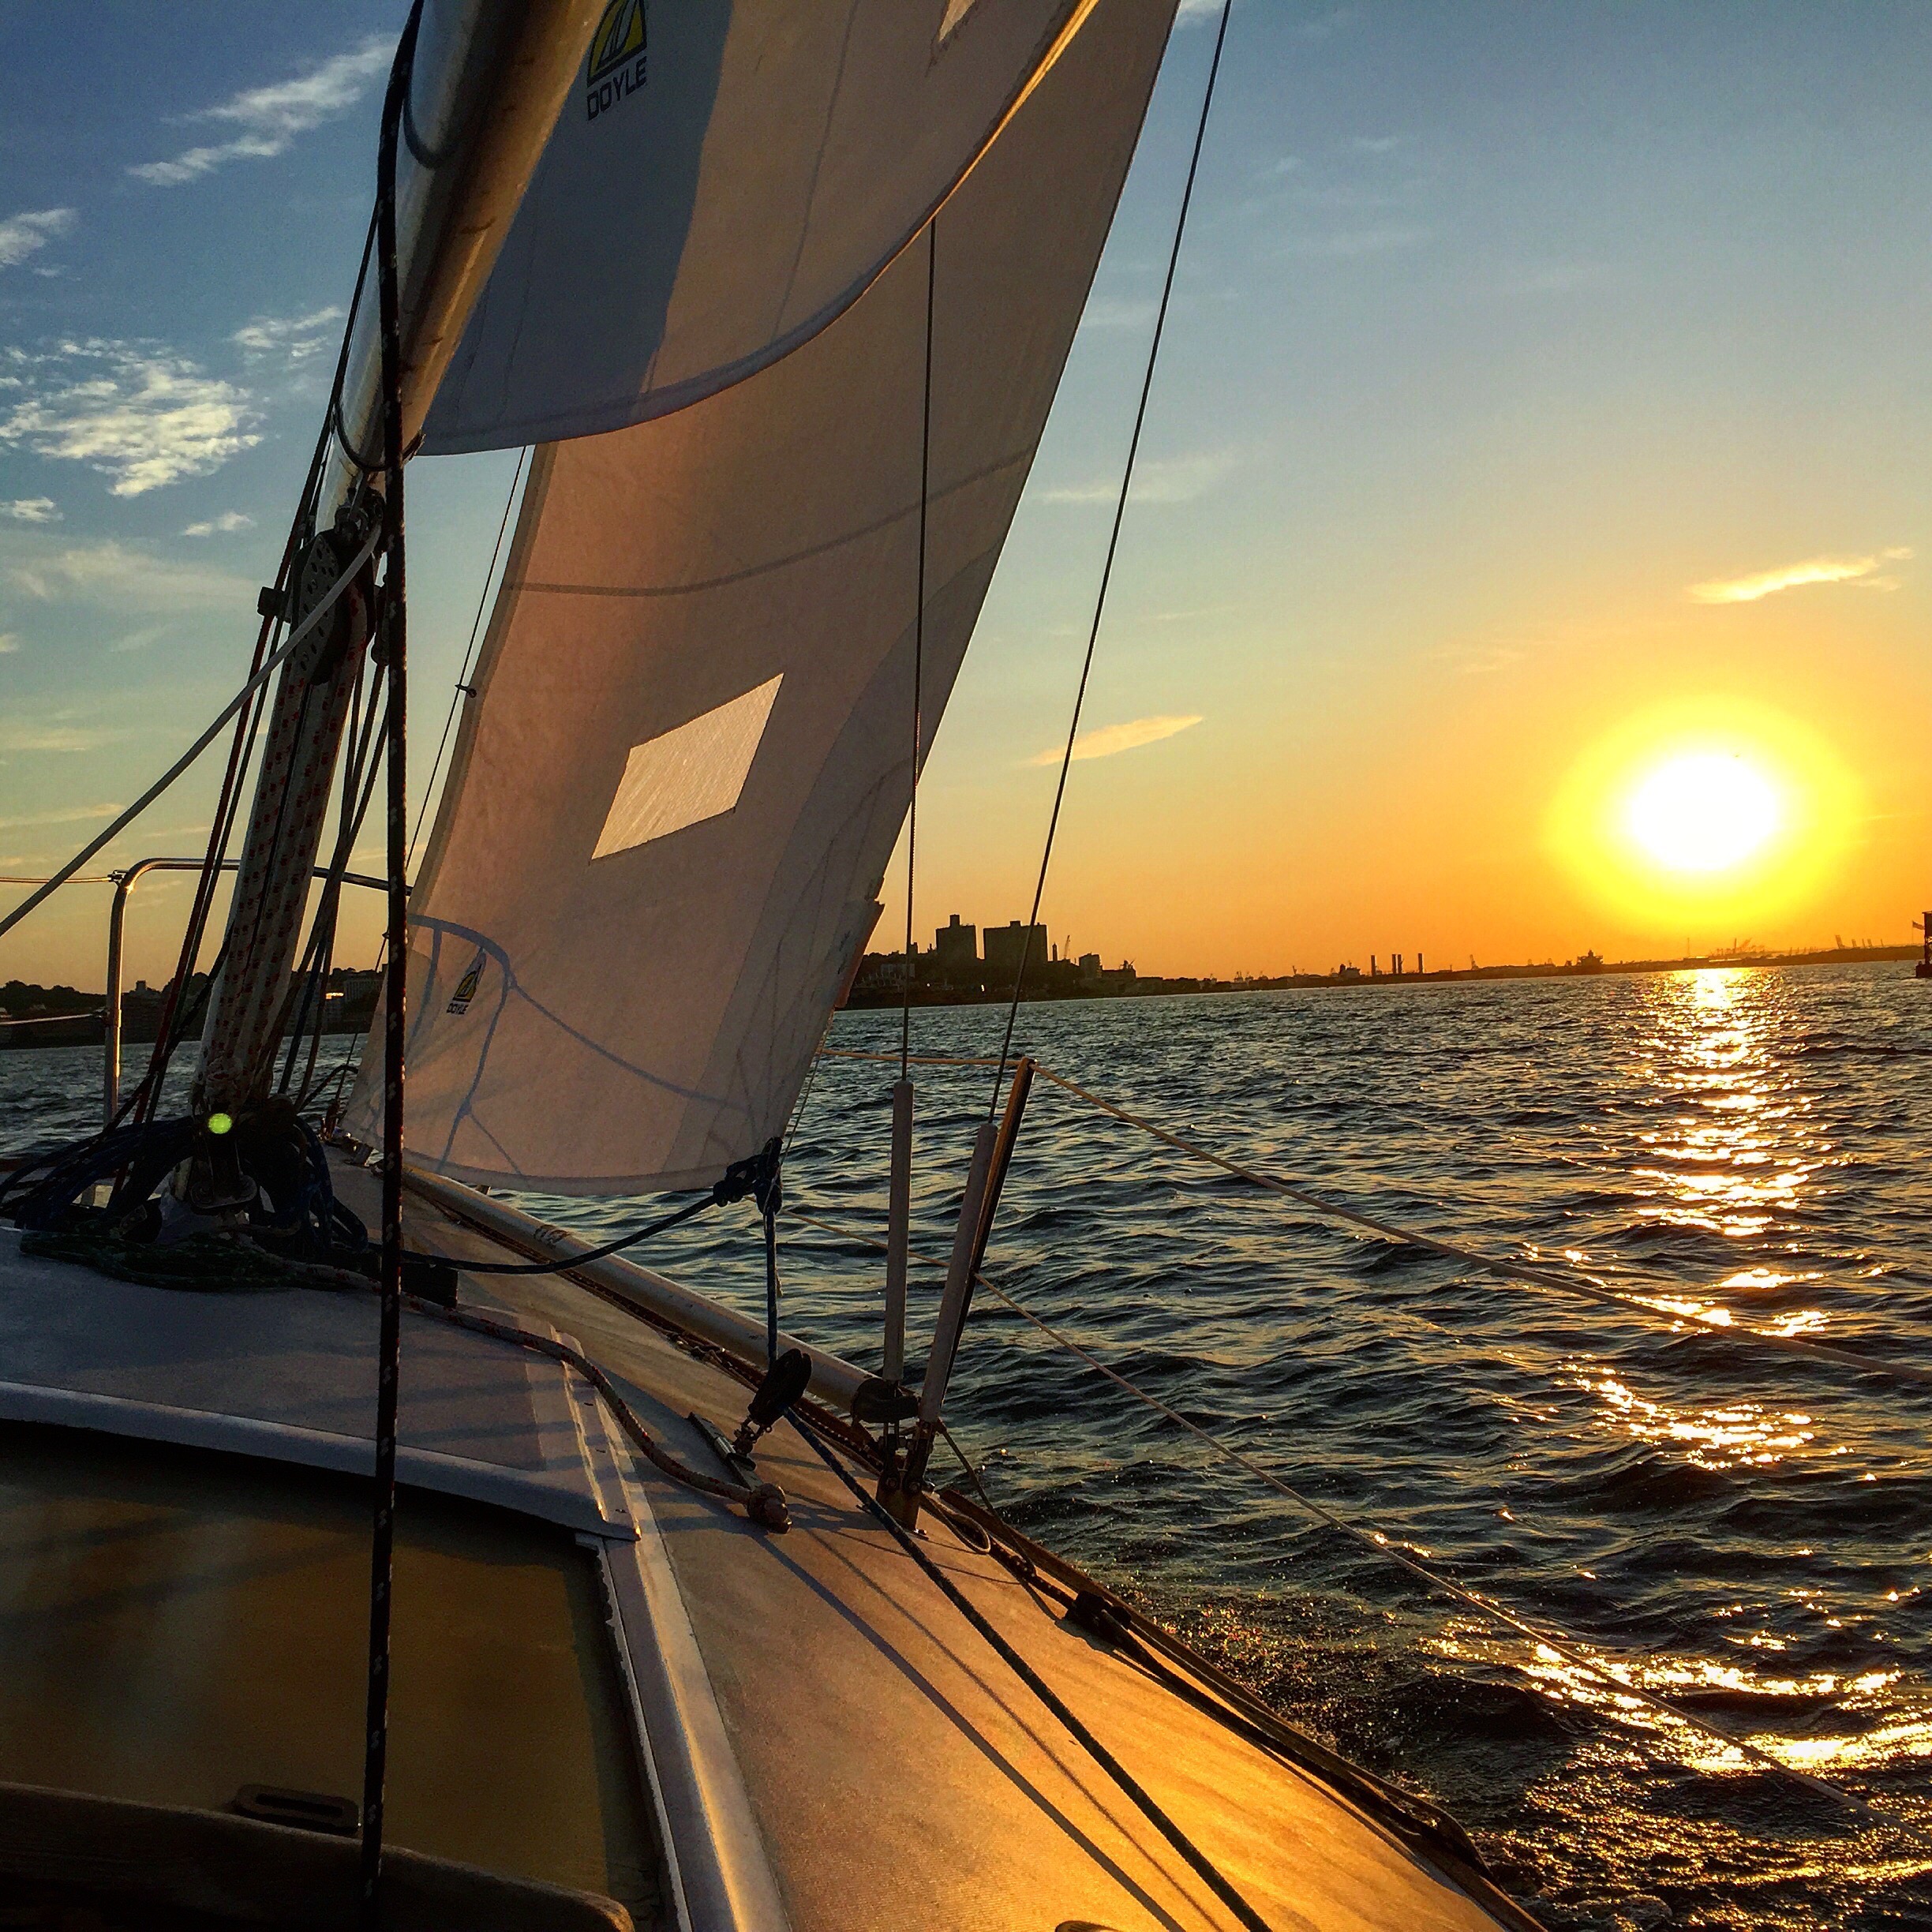 Summer Sailstice - Your Solstice Sailing Playlist | 12° West